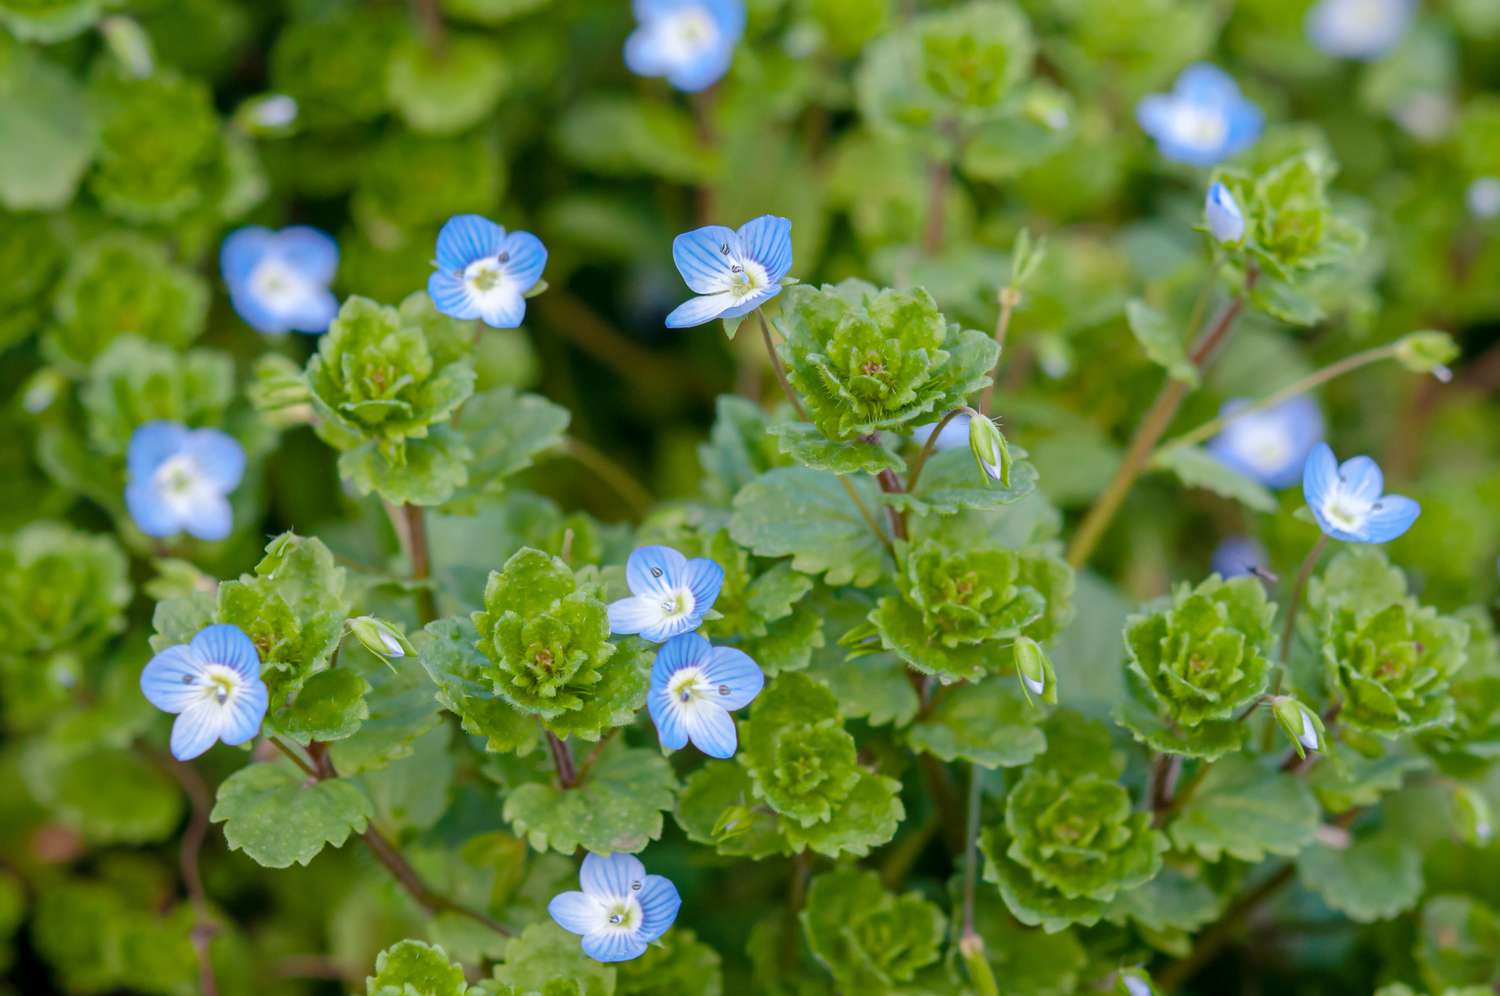 Kriechender Ehrenpreis mit kleinen blauen Blüten und schalenförmigen Blättern